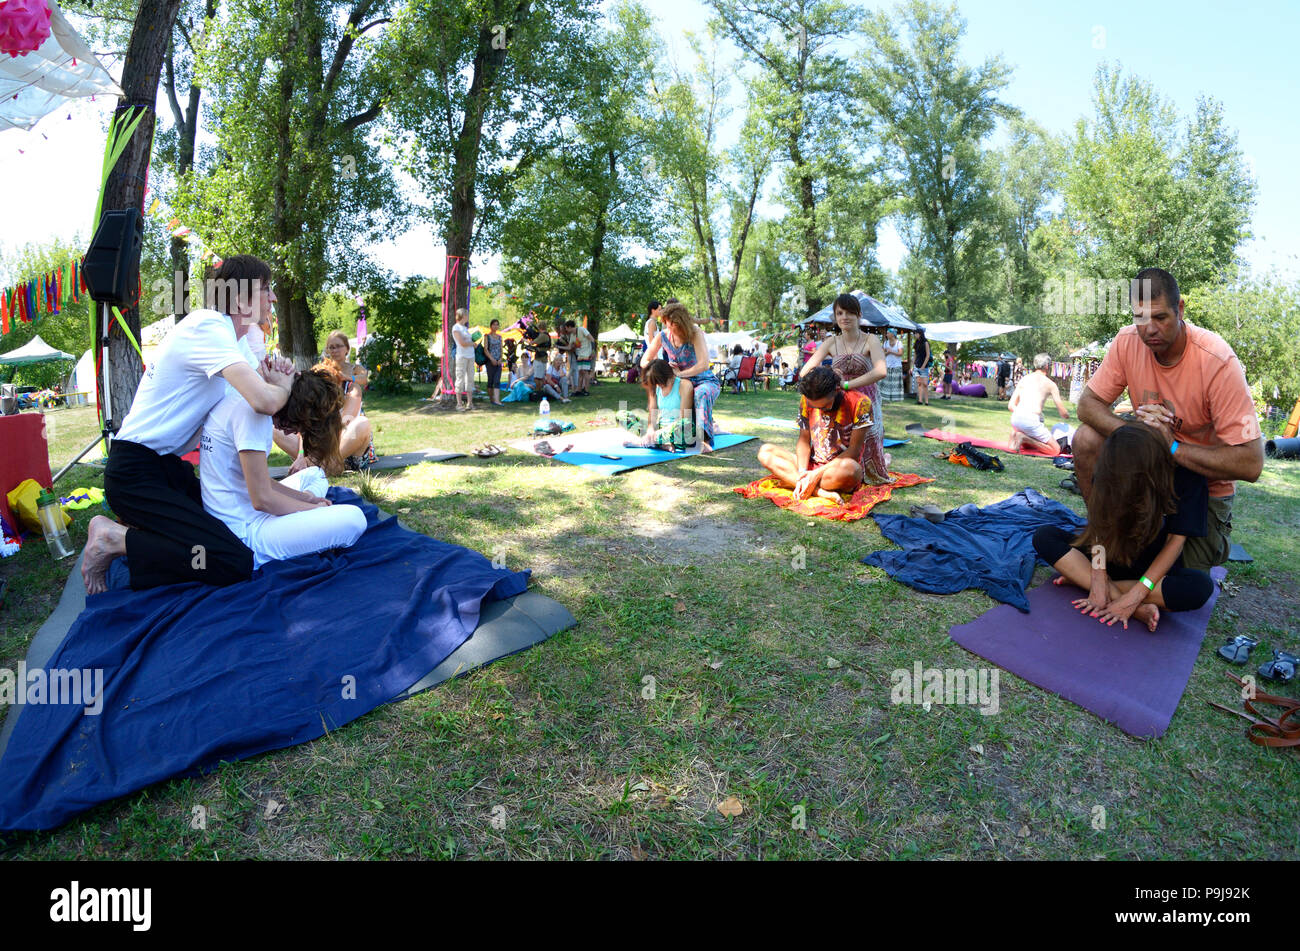 Persone che praticano il massaggio Thai durante il festival di Yoga e cultura vedica "Vedalife-2017, Isola". Il 7 agosto 2017. A Kiev, Ucraina Foto Stock